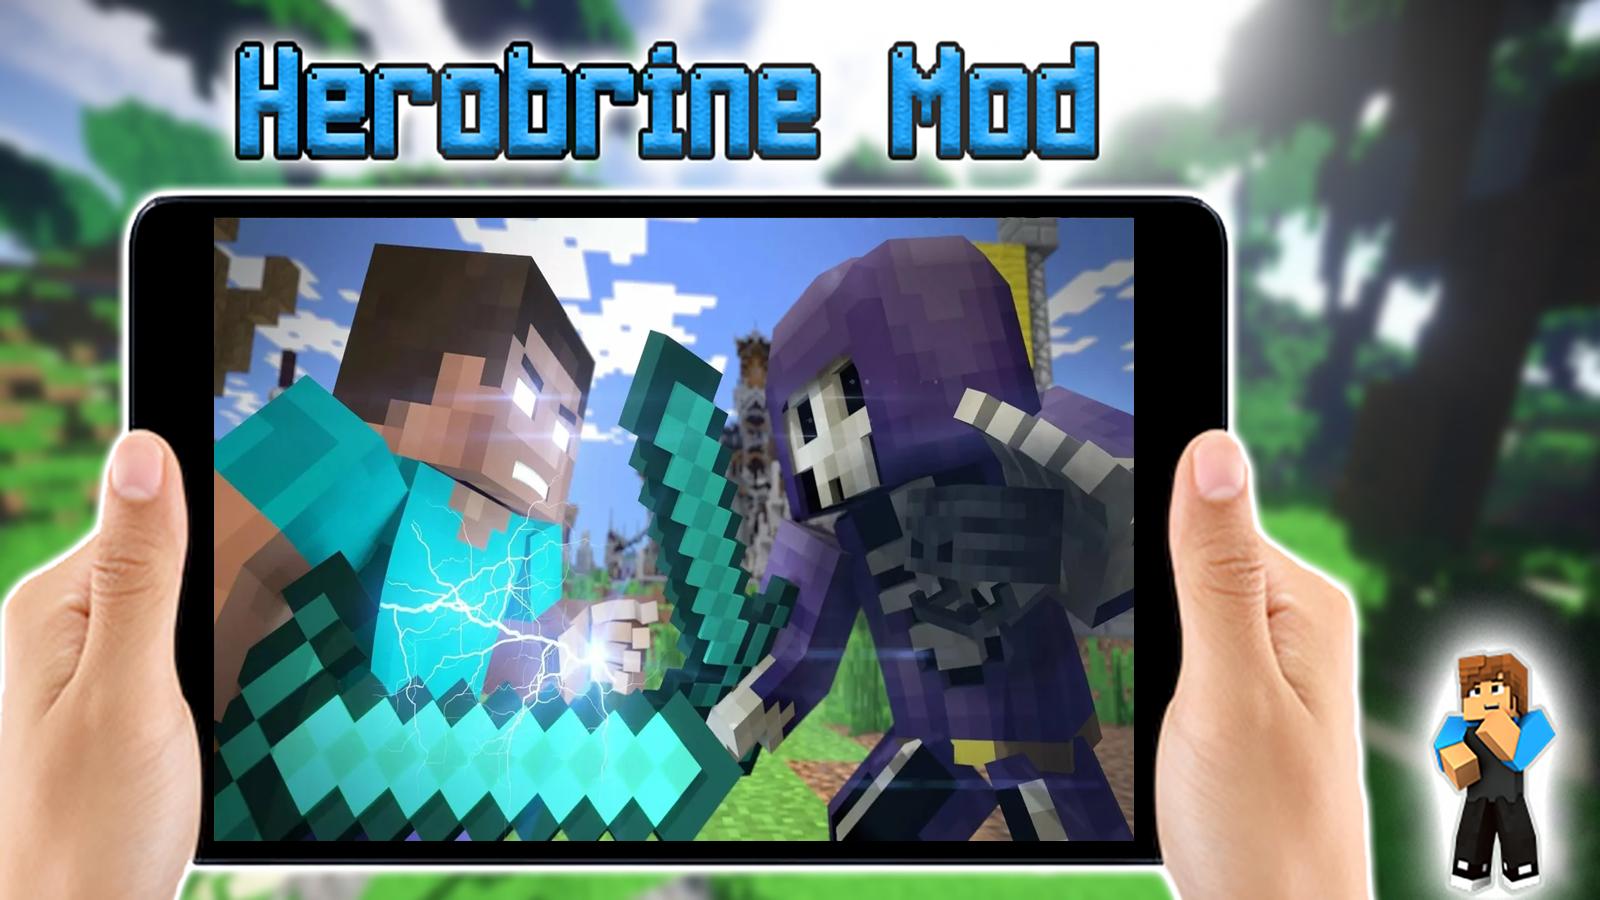 Herobrine Mod For Minecraft Pocket Edition For Android Apk Download - minecraft pocket edition roblox youtube herobrine